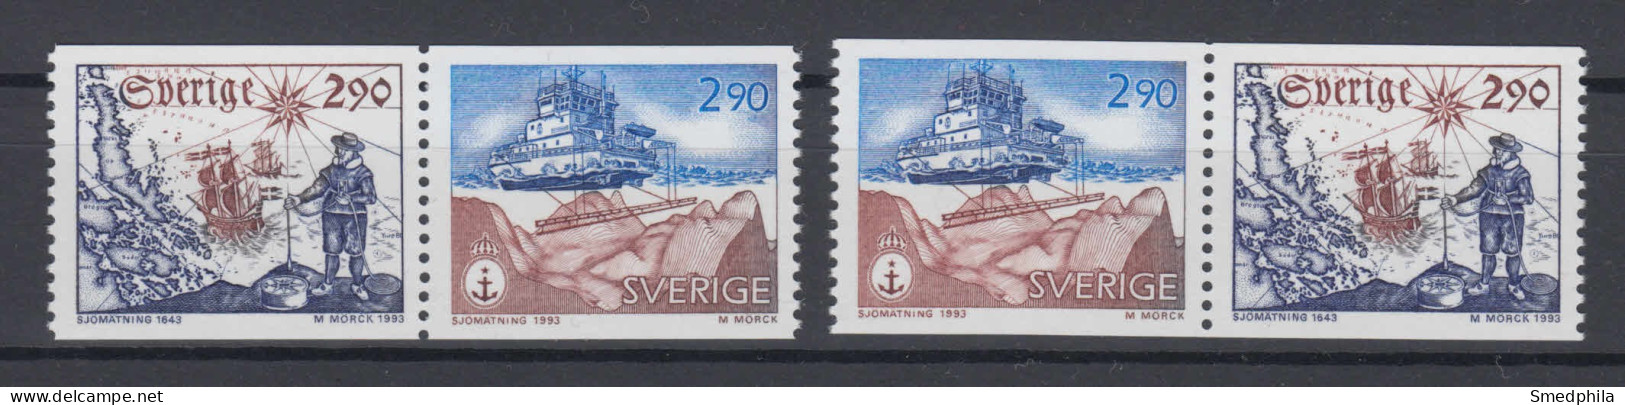 Sweden 1993 - Michel 1797-1798 MNH ** - Neufs